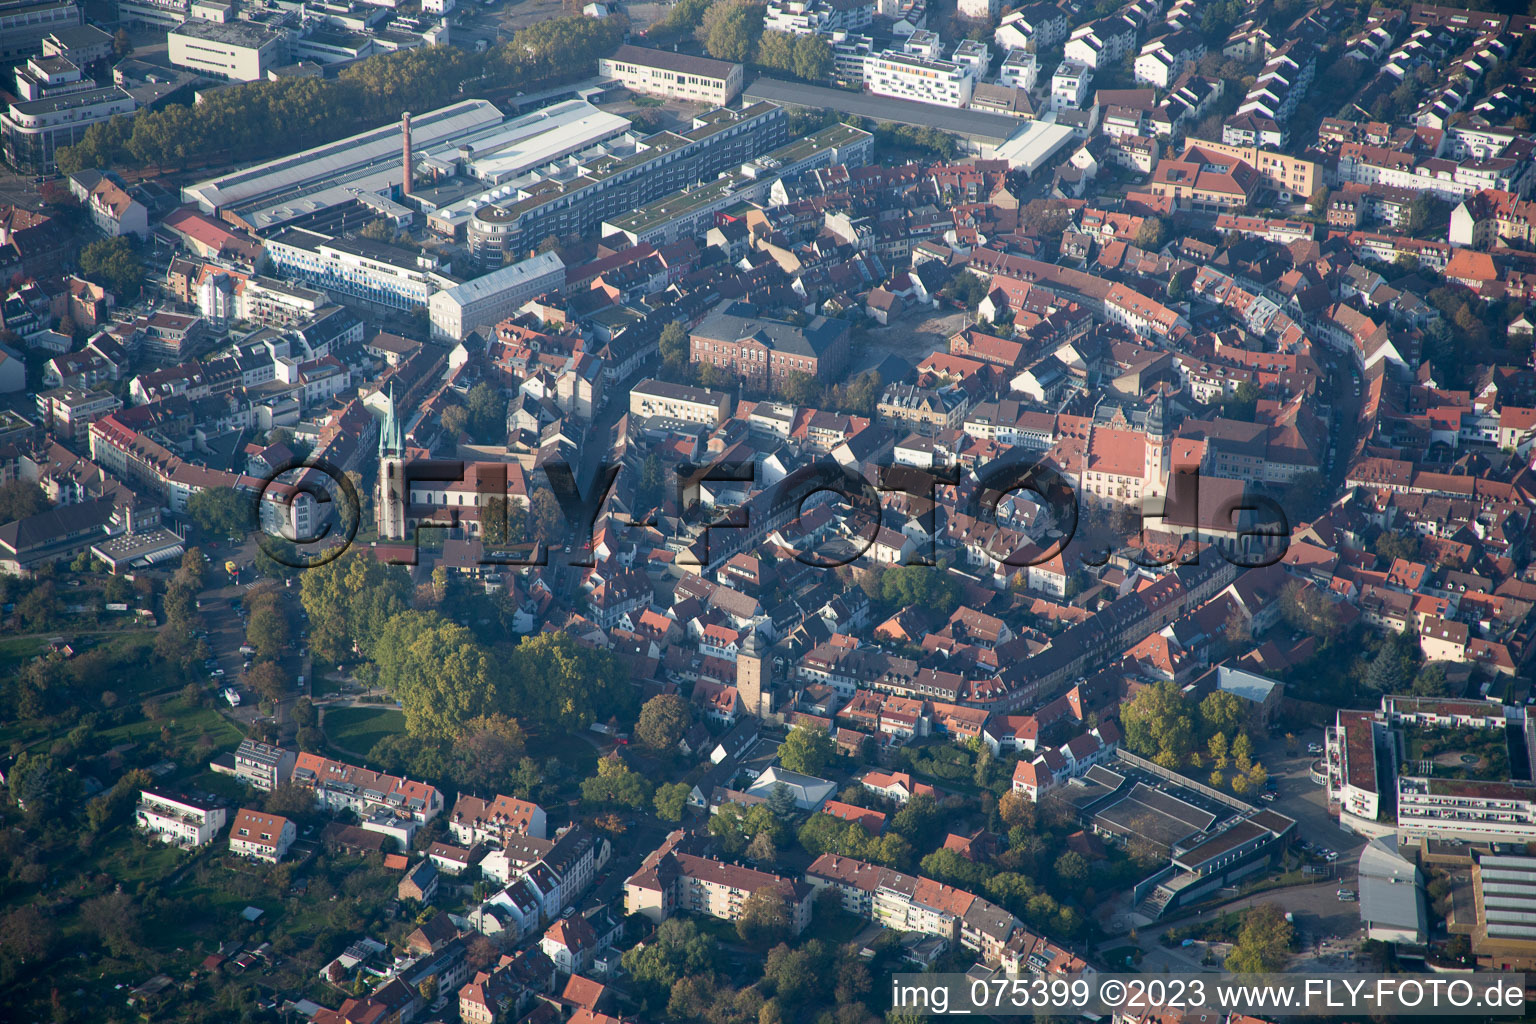 Luftbild von Ortsteil Durlach in Karlsruhe im Bundesland Baden-Württemberg, Deutschland